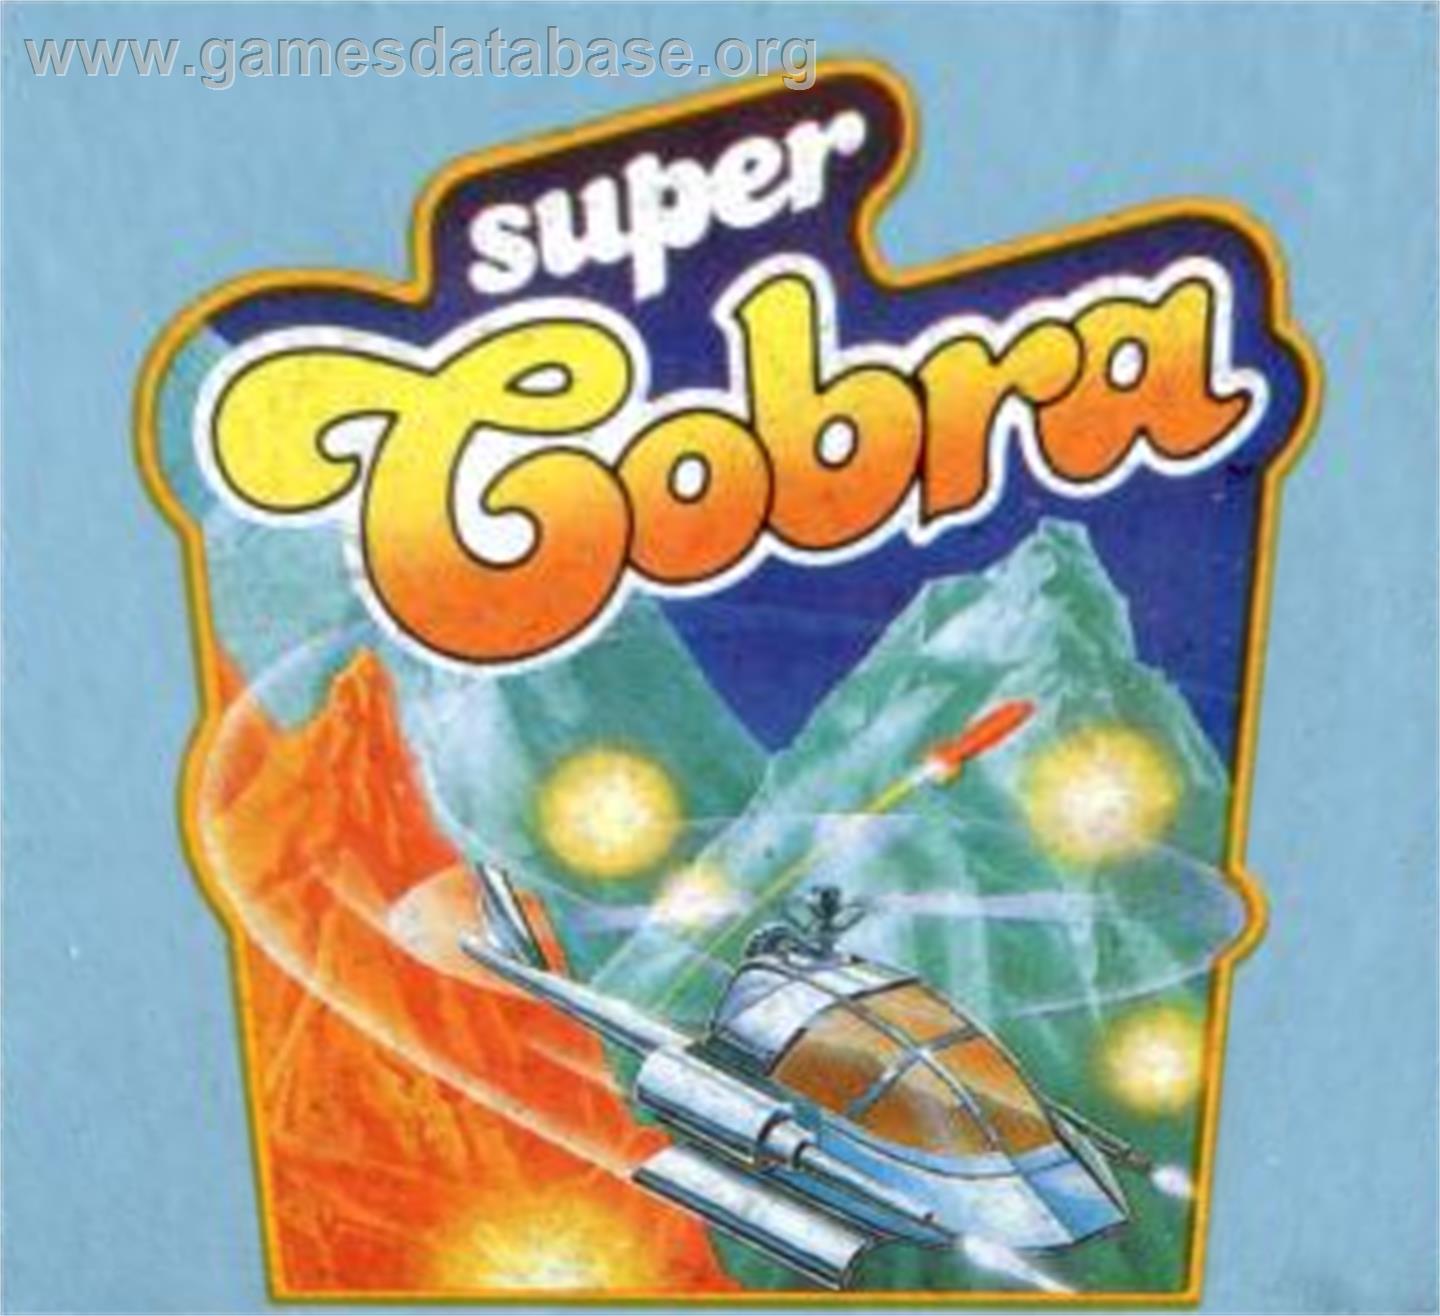 Super Cobra - Atari 5200 - Artwork - Cartridge Top